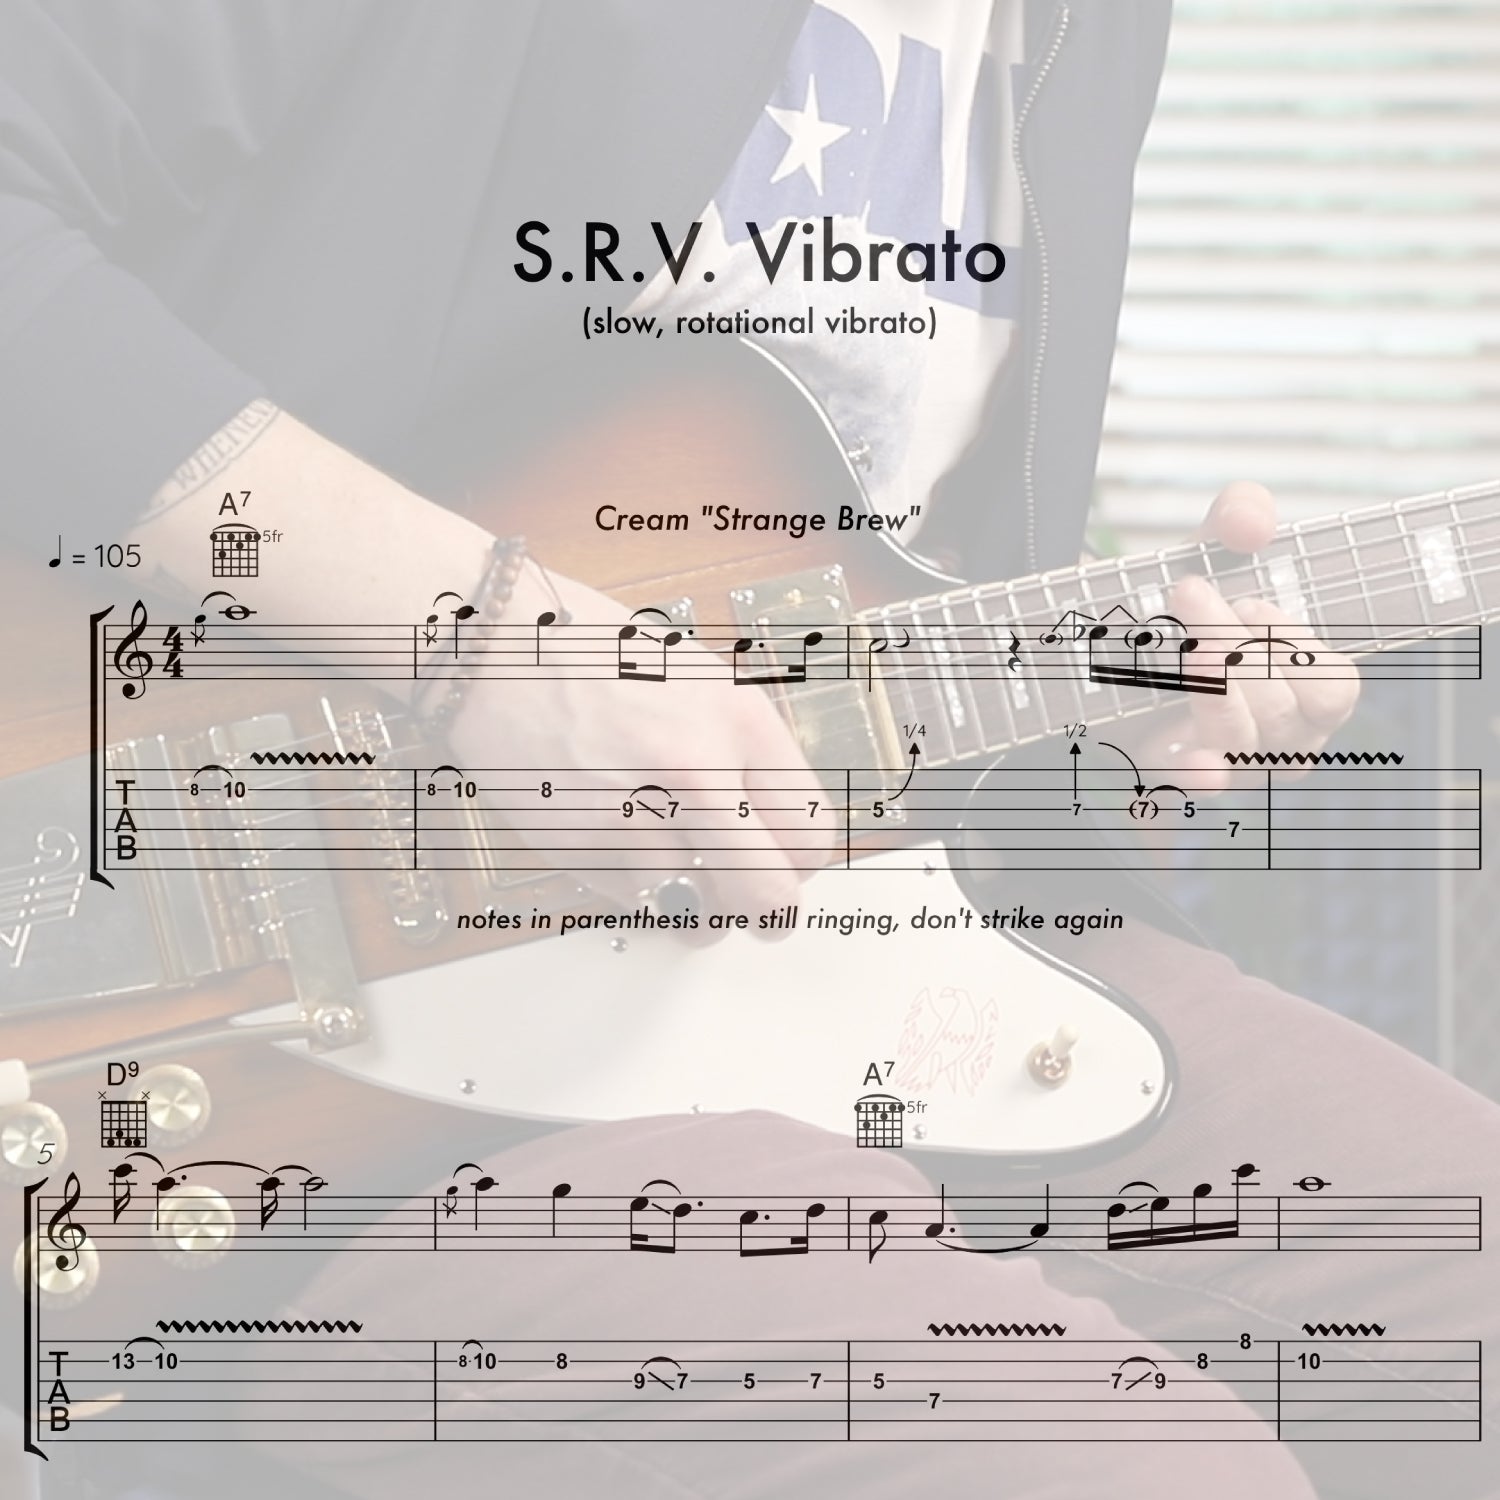 S.R.V. Vibrato